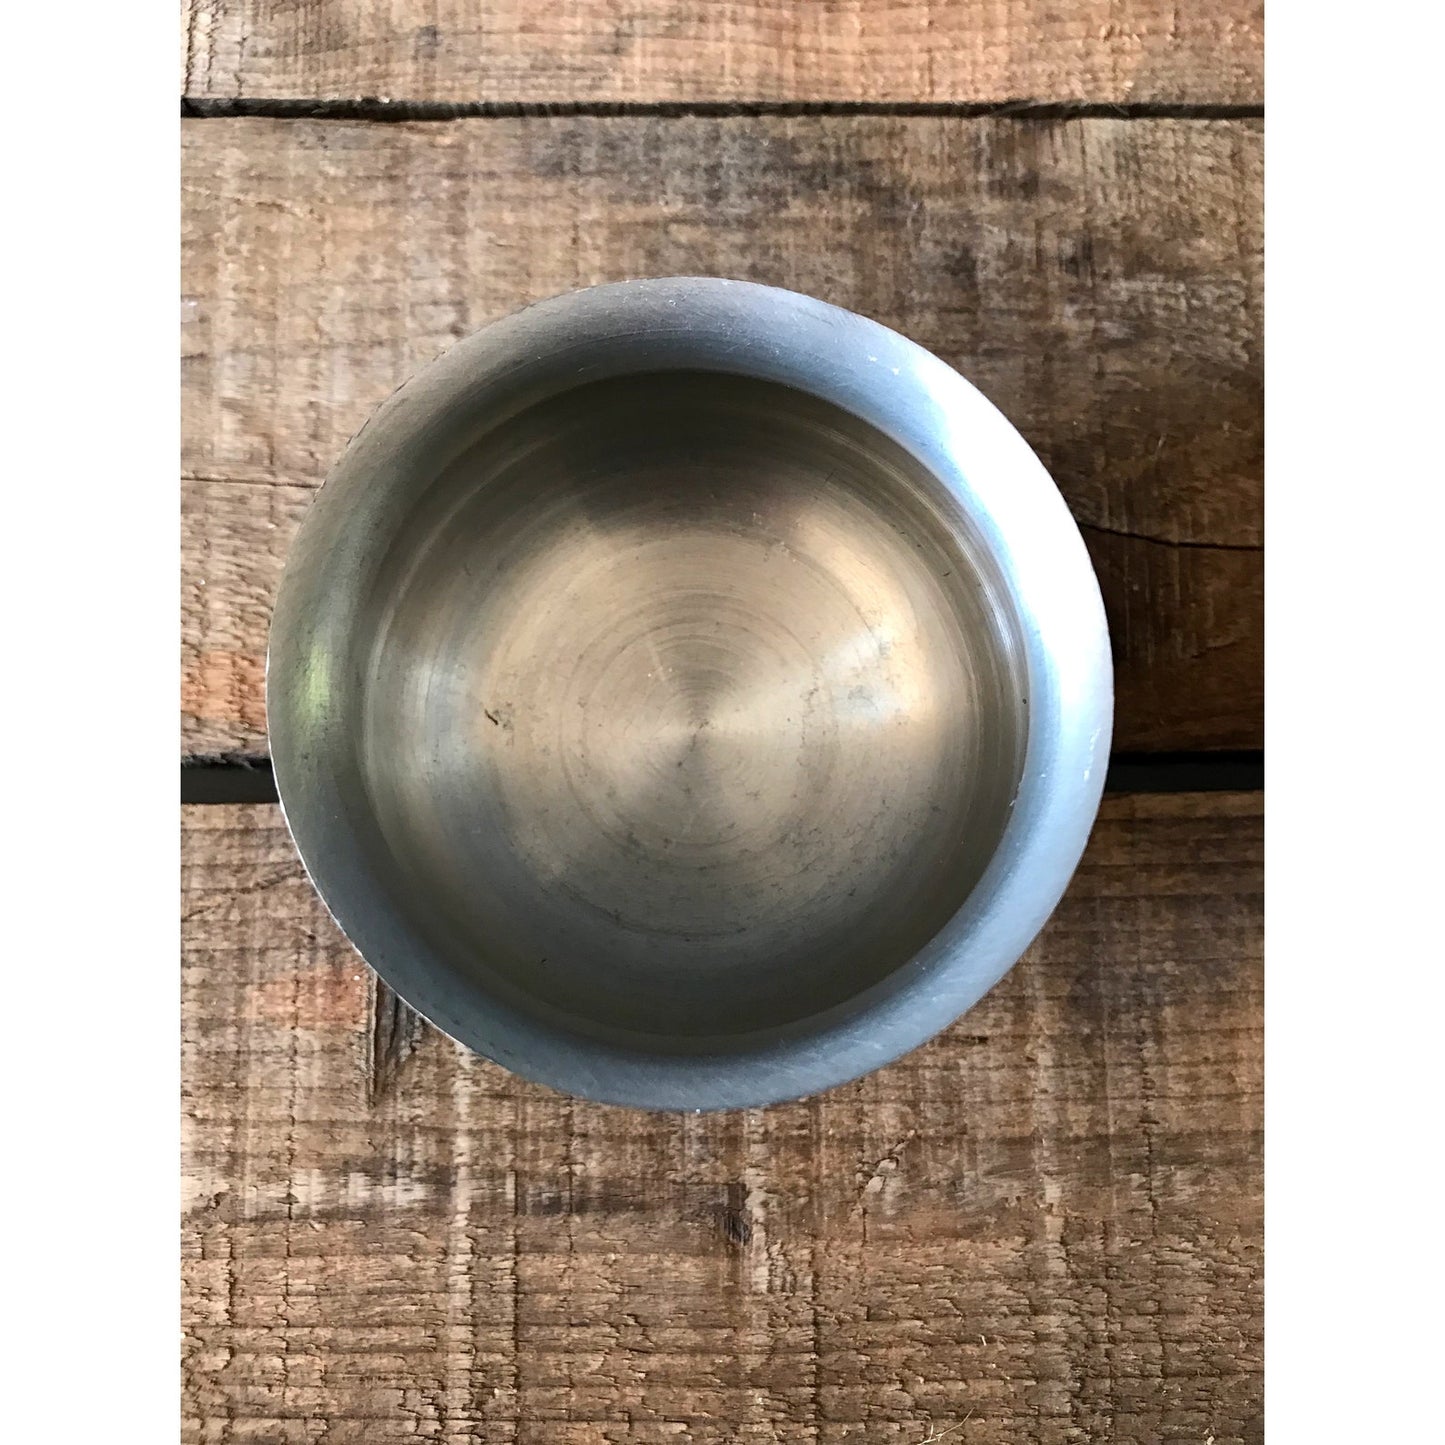 Rare Vintage Woodbury Pewter Open Sugar Bowl